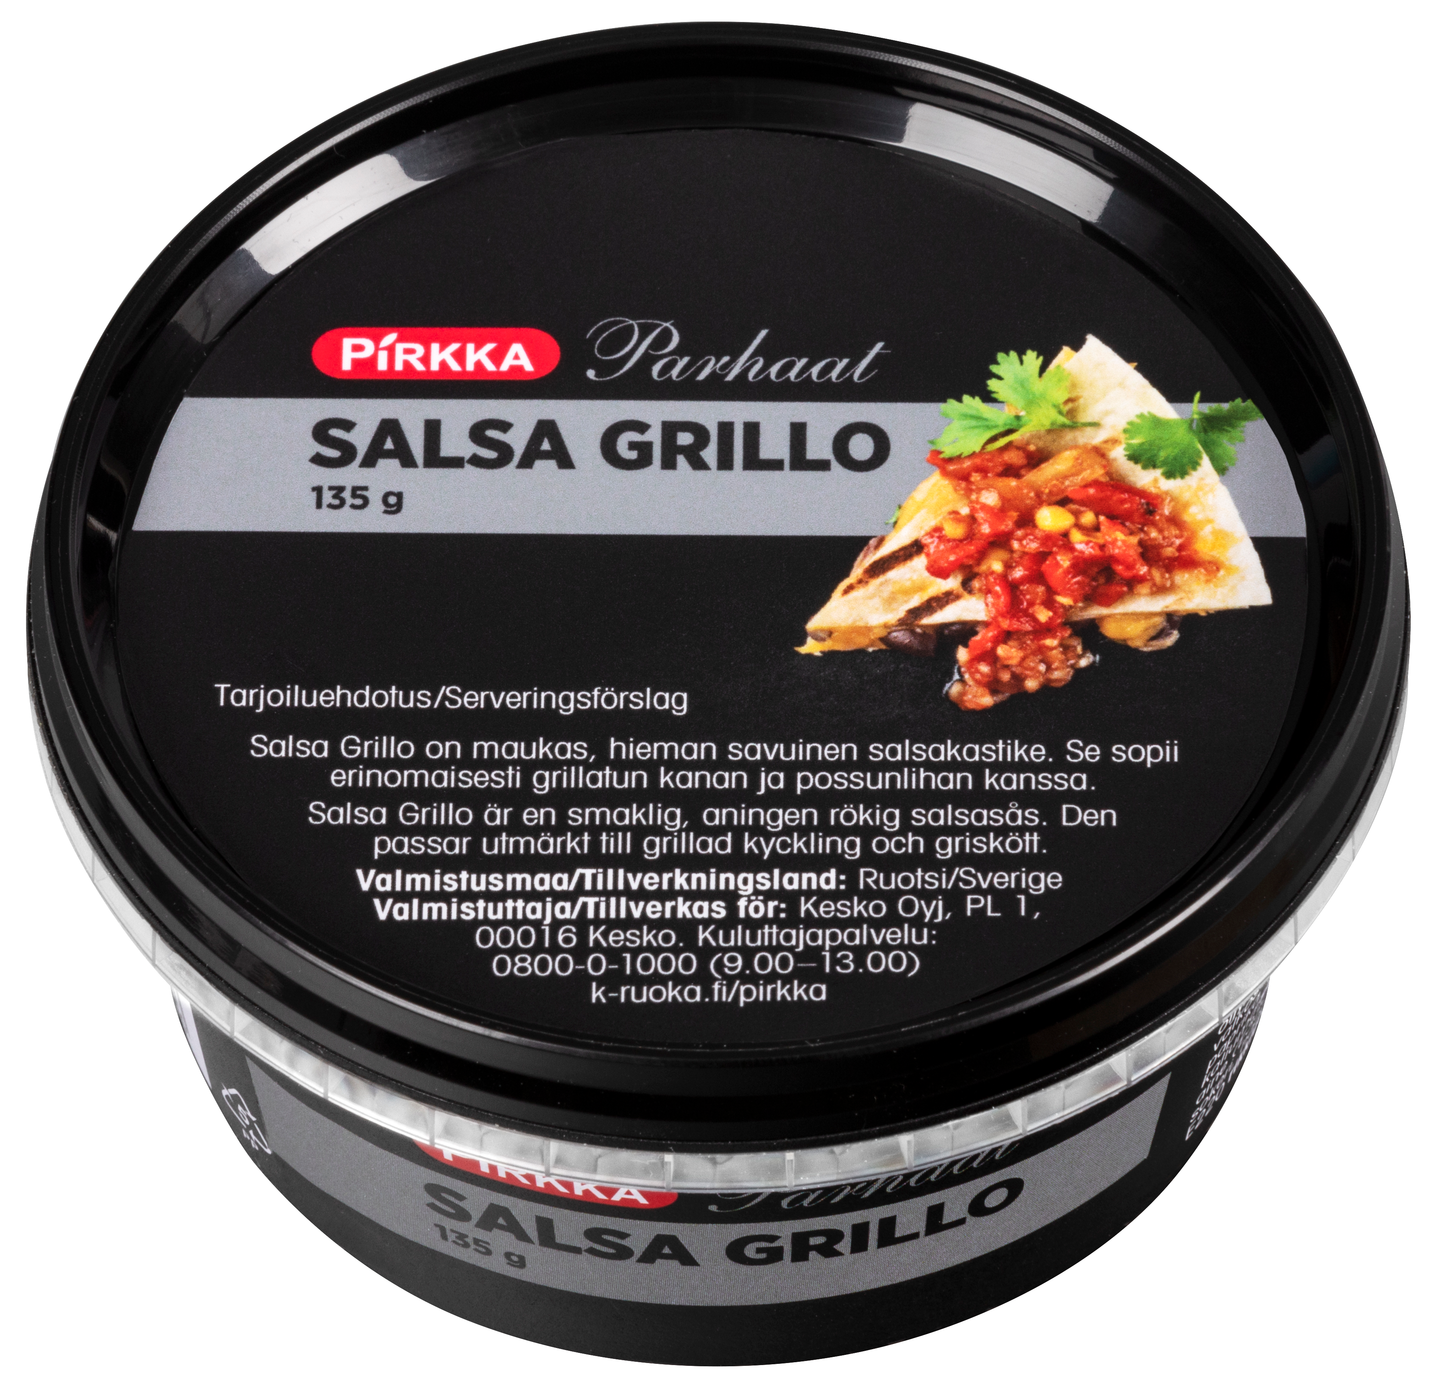 Pirkka Parhaat salsa grillo 135g | K-Ruoka Verkkokauppa